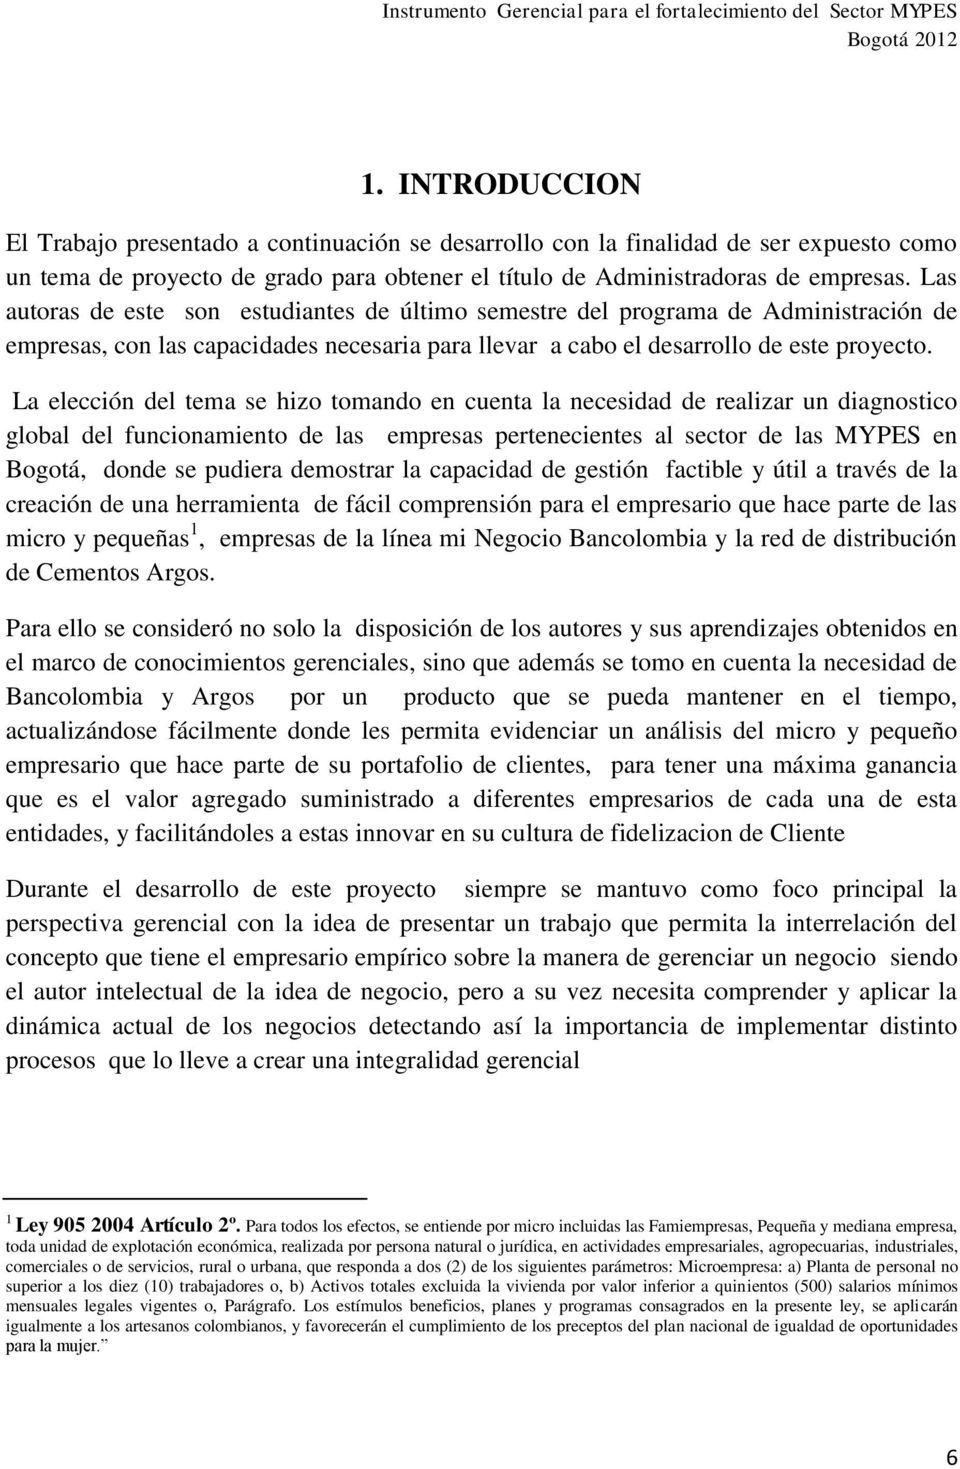 La elección del tema se hizo tomando en cuenta la necesidad de realizar un diagnostico global del funcionamiento de las empresas pertenecientes al sector de las MYPES en Bogotá, donde se pudiera